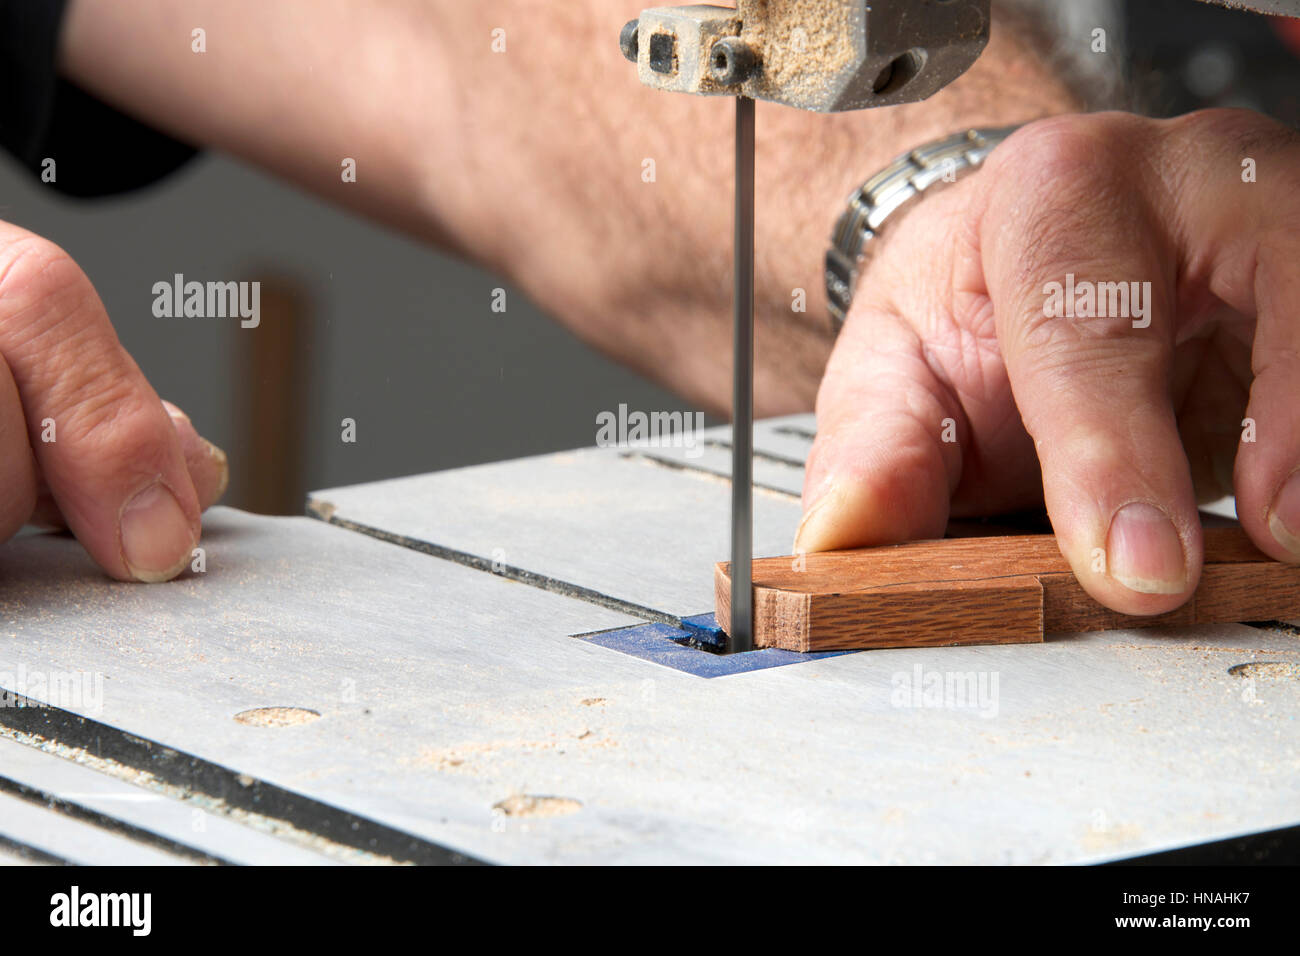 Männliche Hände halten ein kleines Stück Holz Präzisionsschneiden auf einer Tischplatte Jig sah. Sägespäne überall. Stockfoto